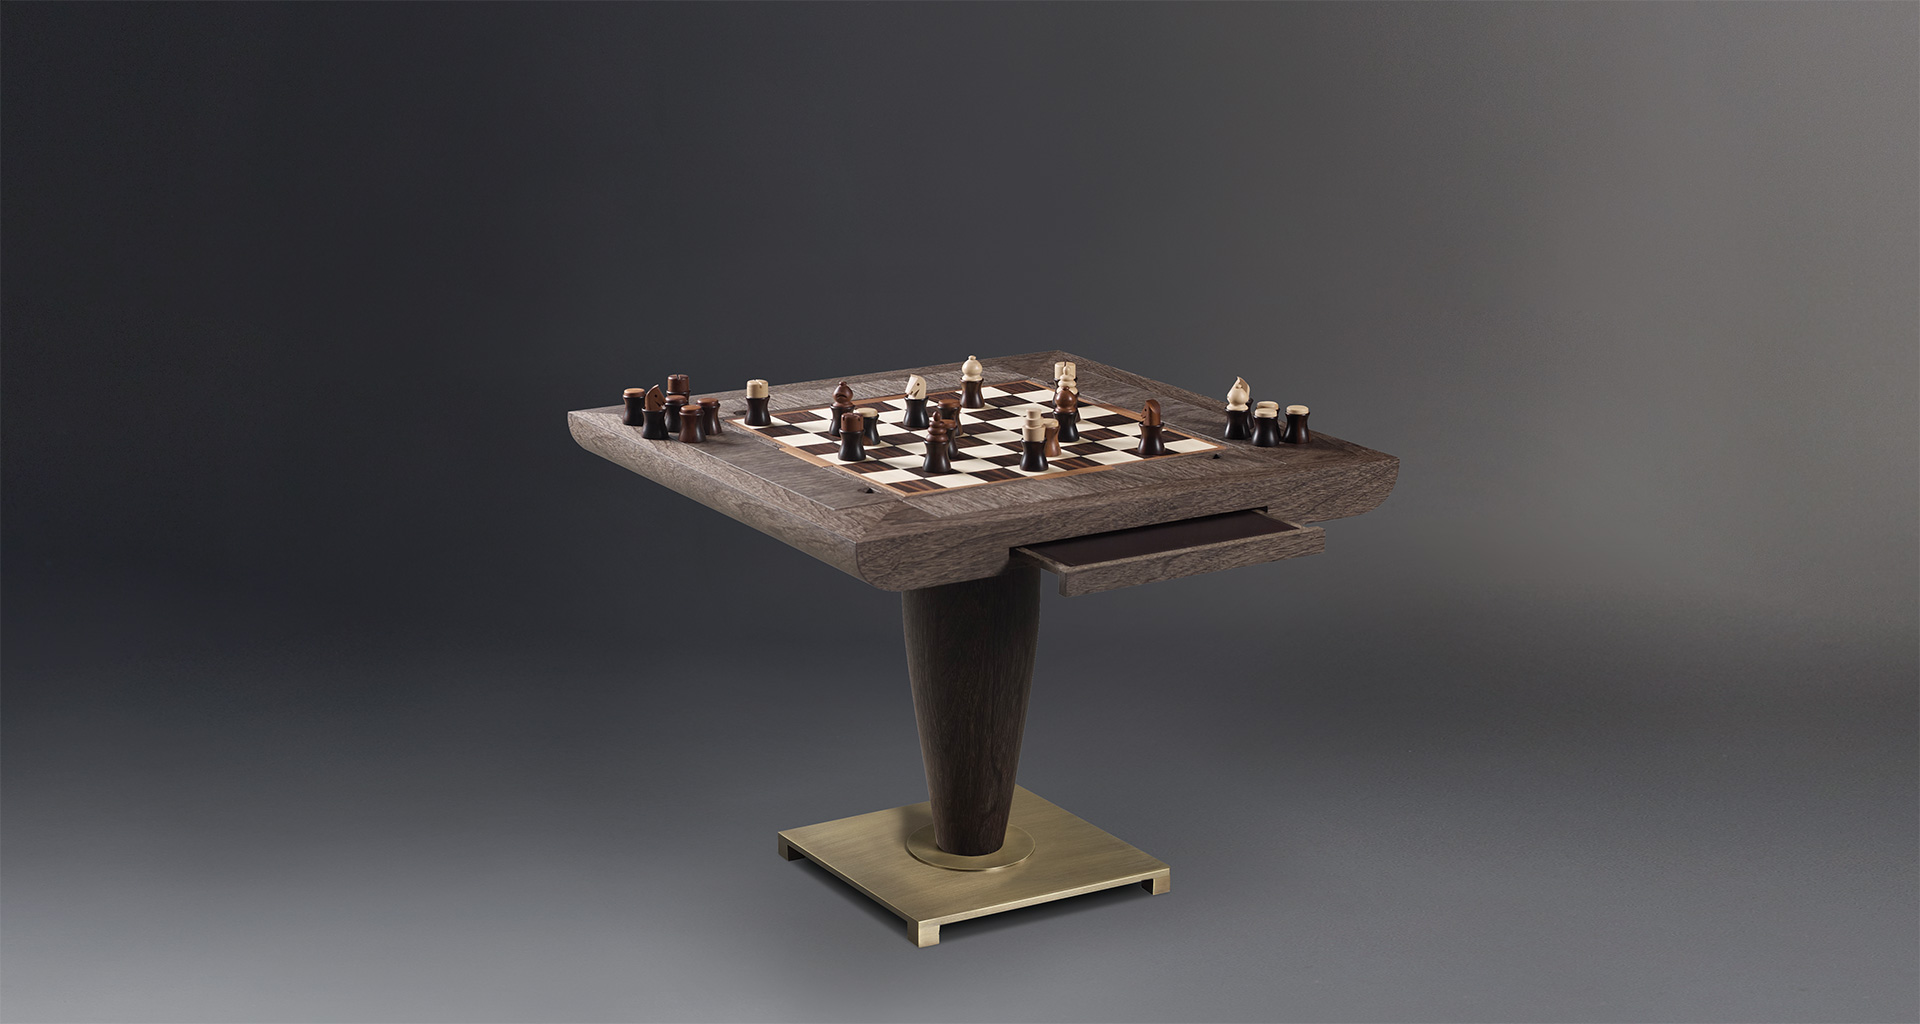 Bassano da gioco è un tavolo in legno e base in bronzo, accessoriato per diversi giochi da tavolo, del catalogo di Promemoria | Promemoria